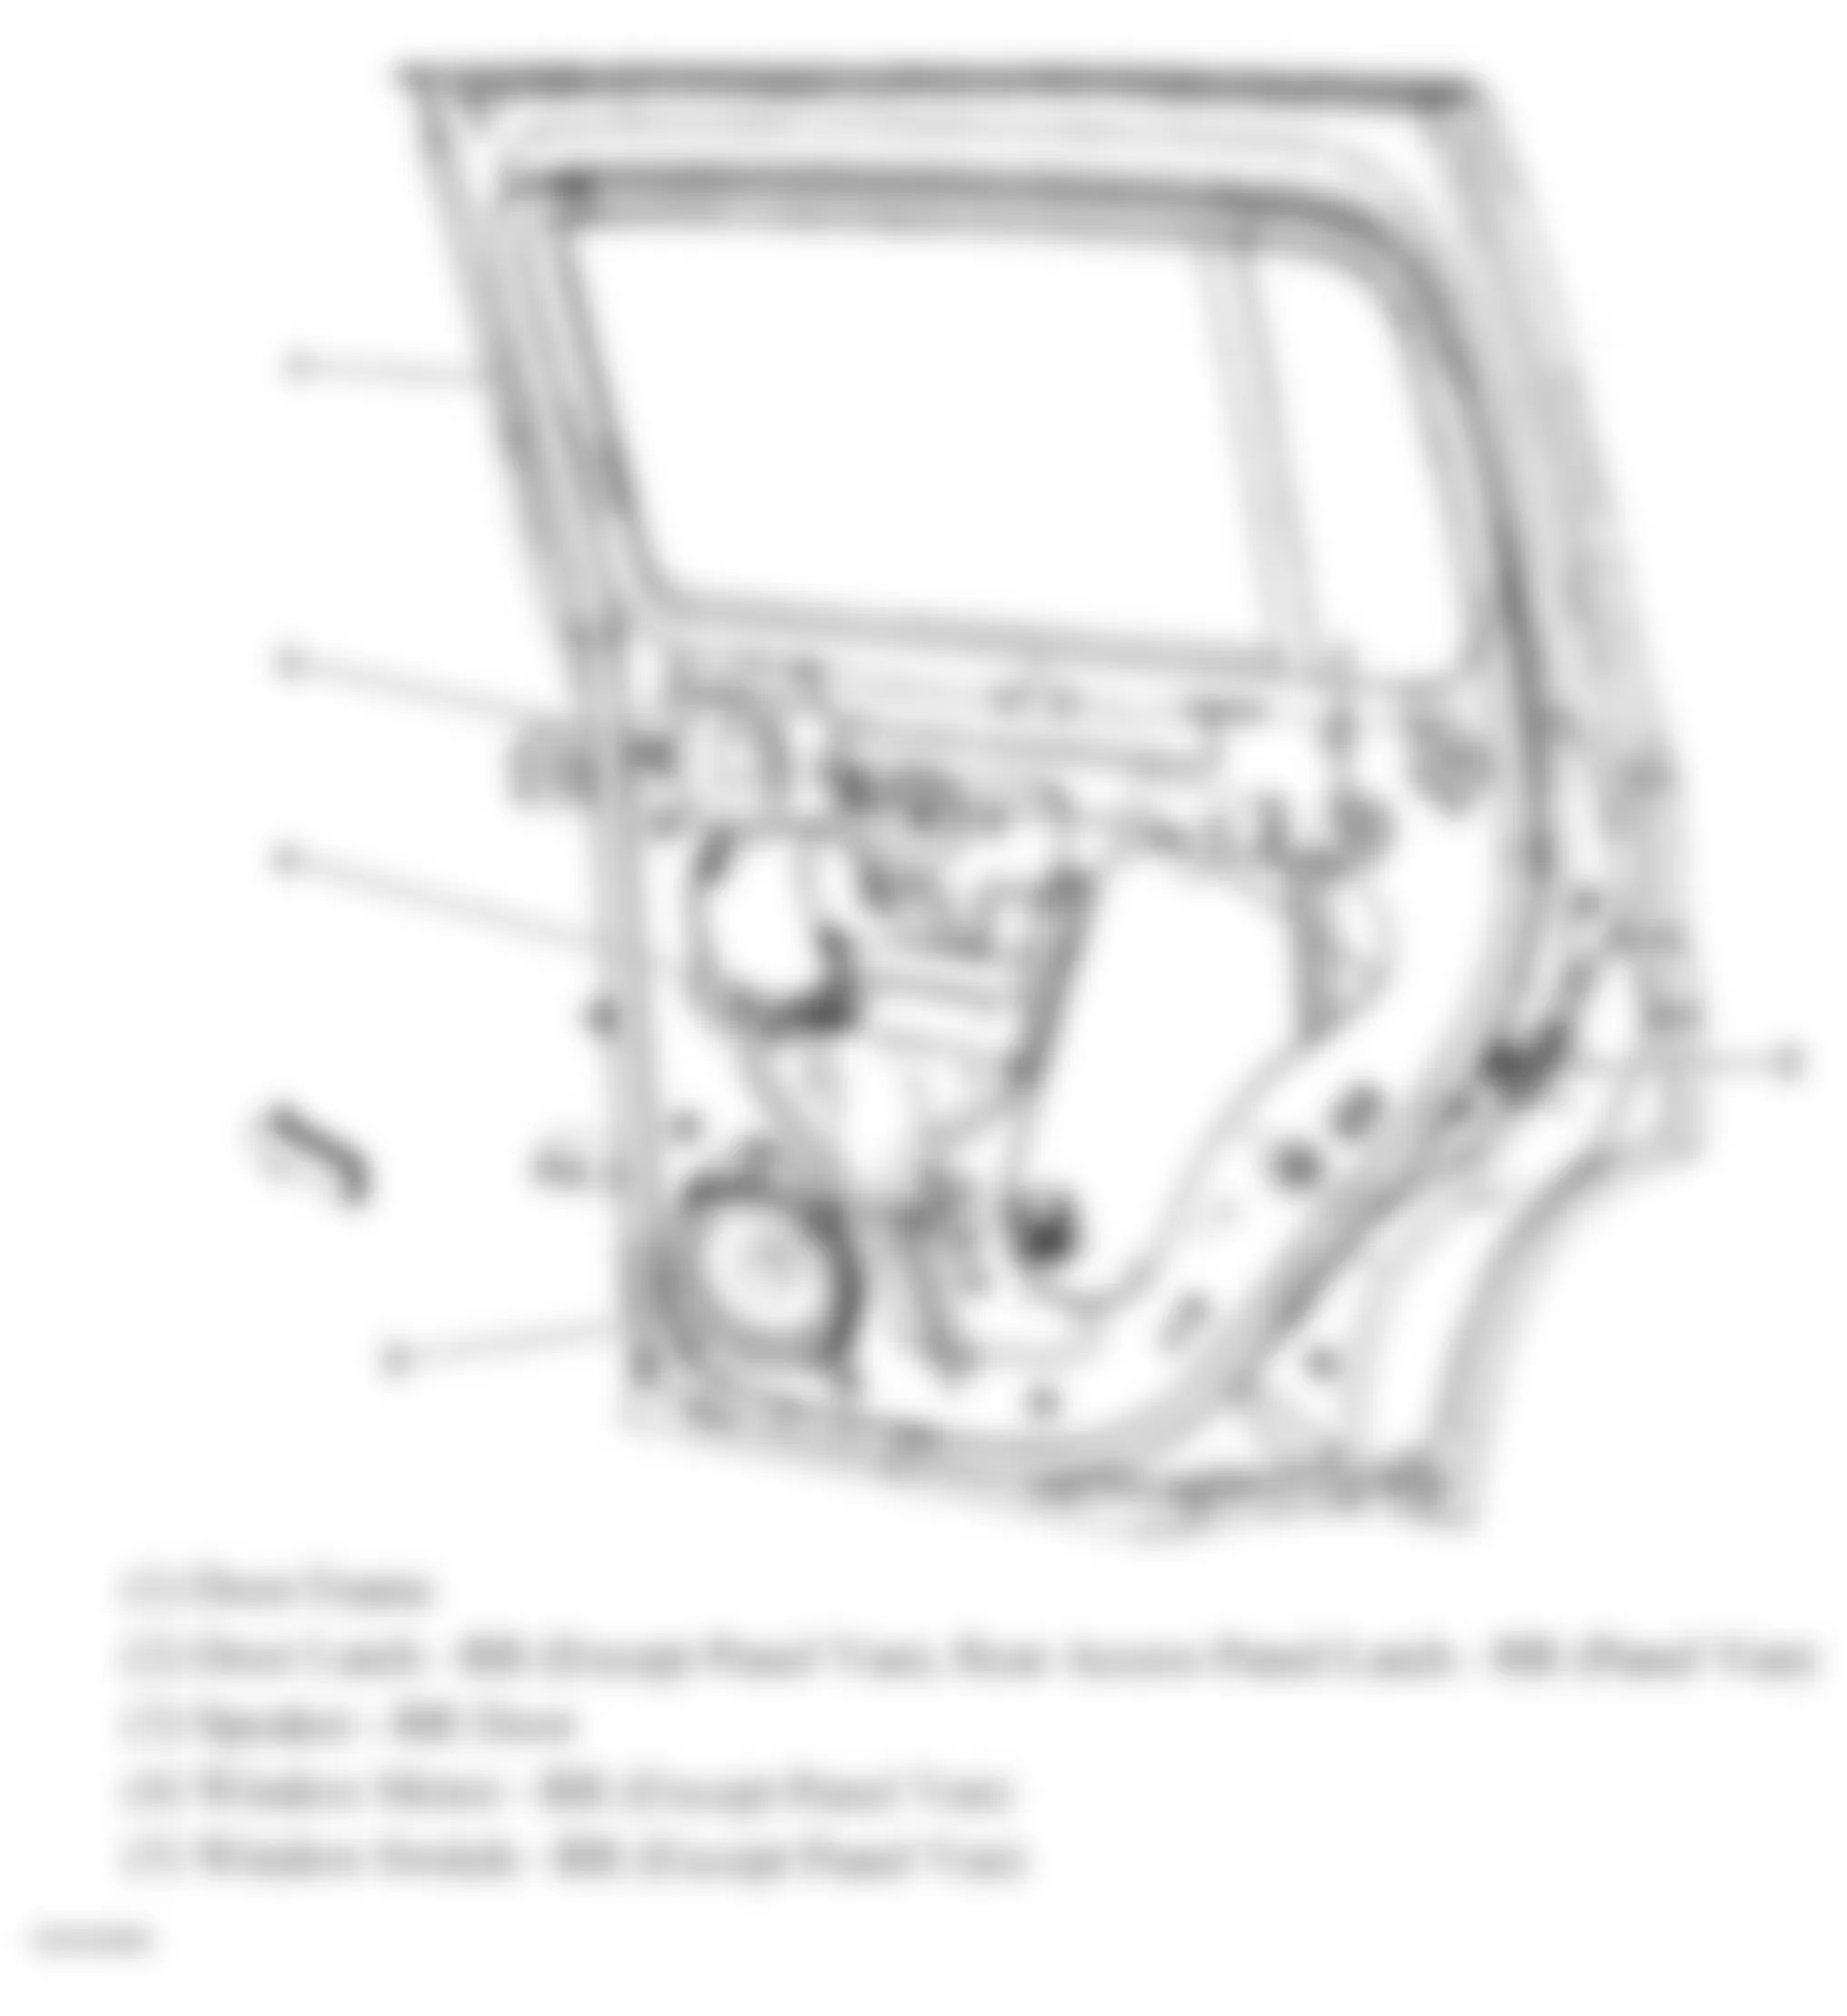 Chevrolet HHR LT 2009 - Component Locations -  Right Rear Door/Rear Access Panel